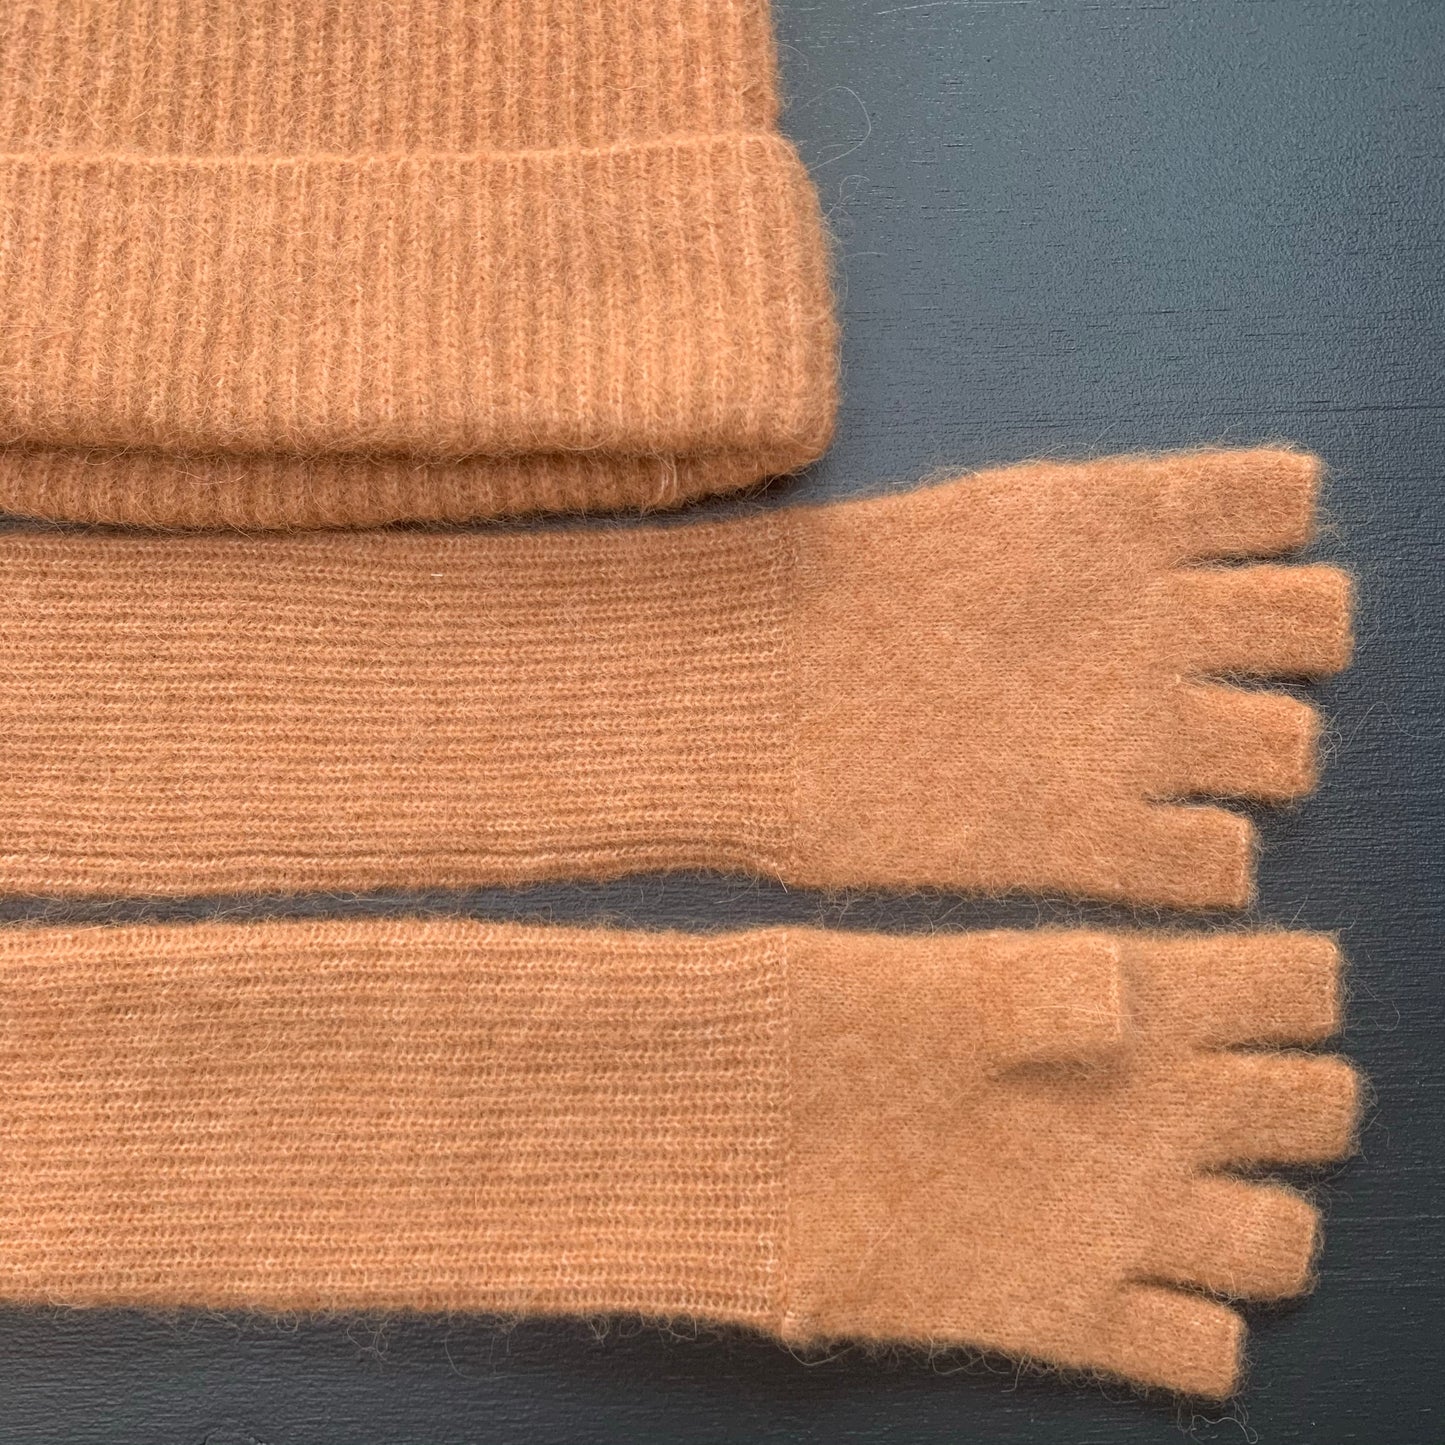 Humanoid BERKHE knitted fingerless gloves Camel